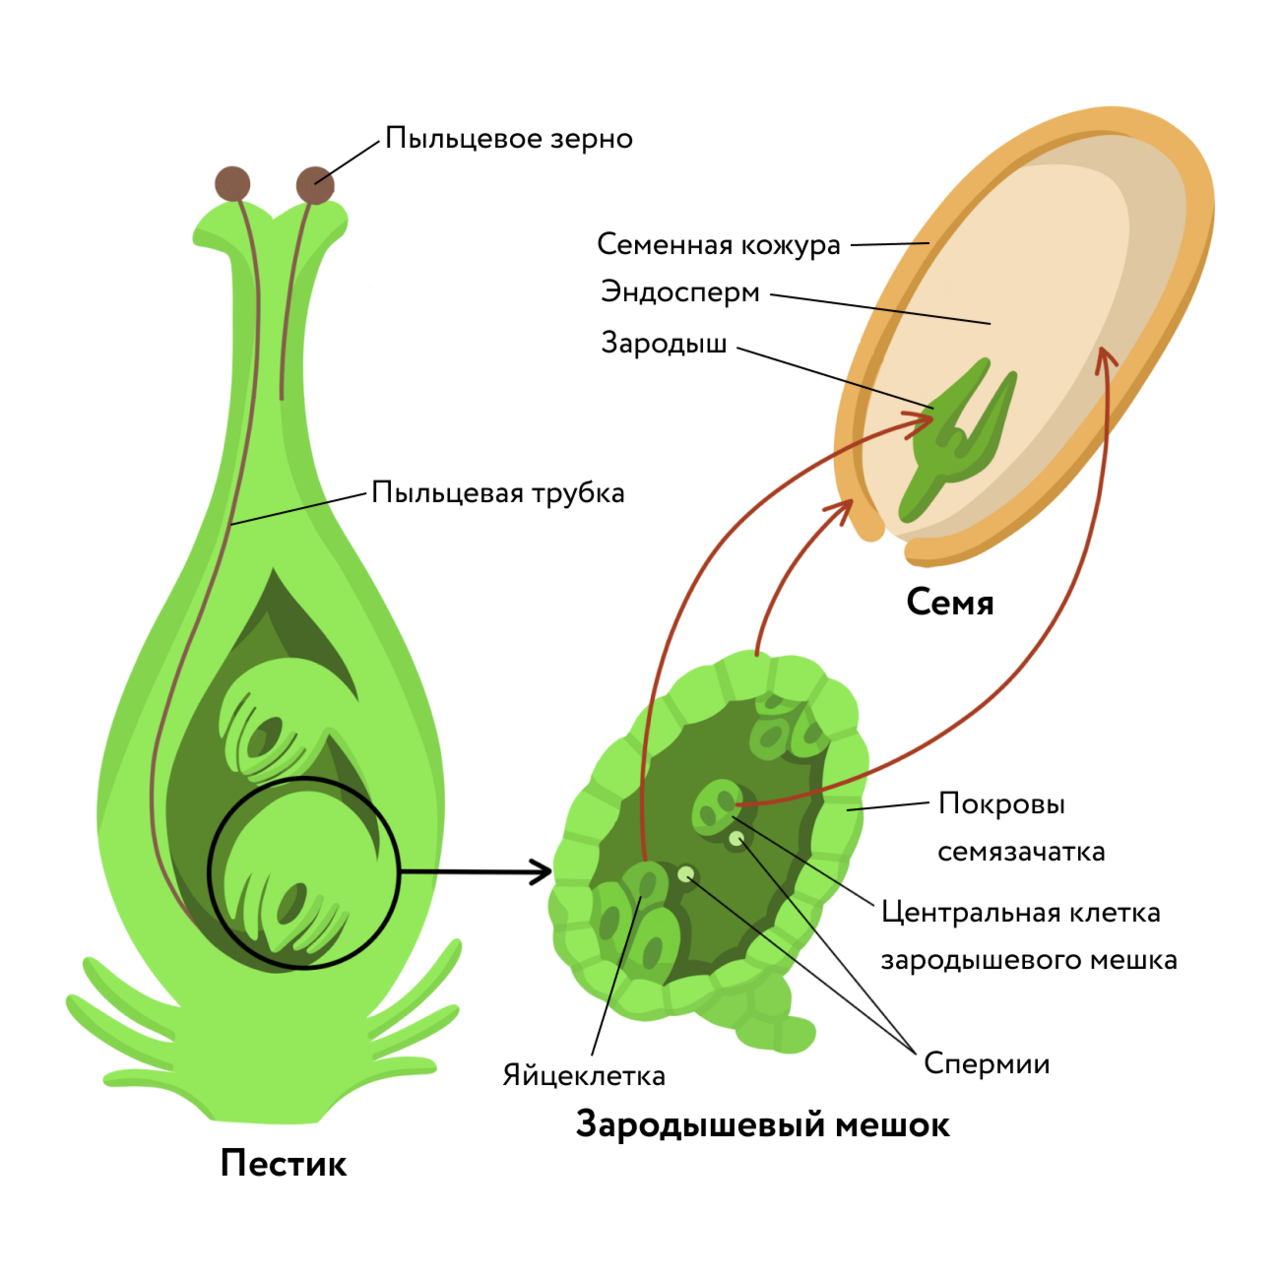 Спермии сосны образуются в результате. Зародышевый мешок покрытосеменных растений. Двойное оплодотворение у покрытосеменных схема. Строение семязачатка цветковых растений. Строение зародышевого мешка у покрытосеменных.